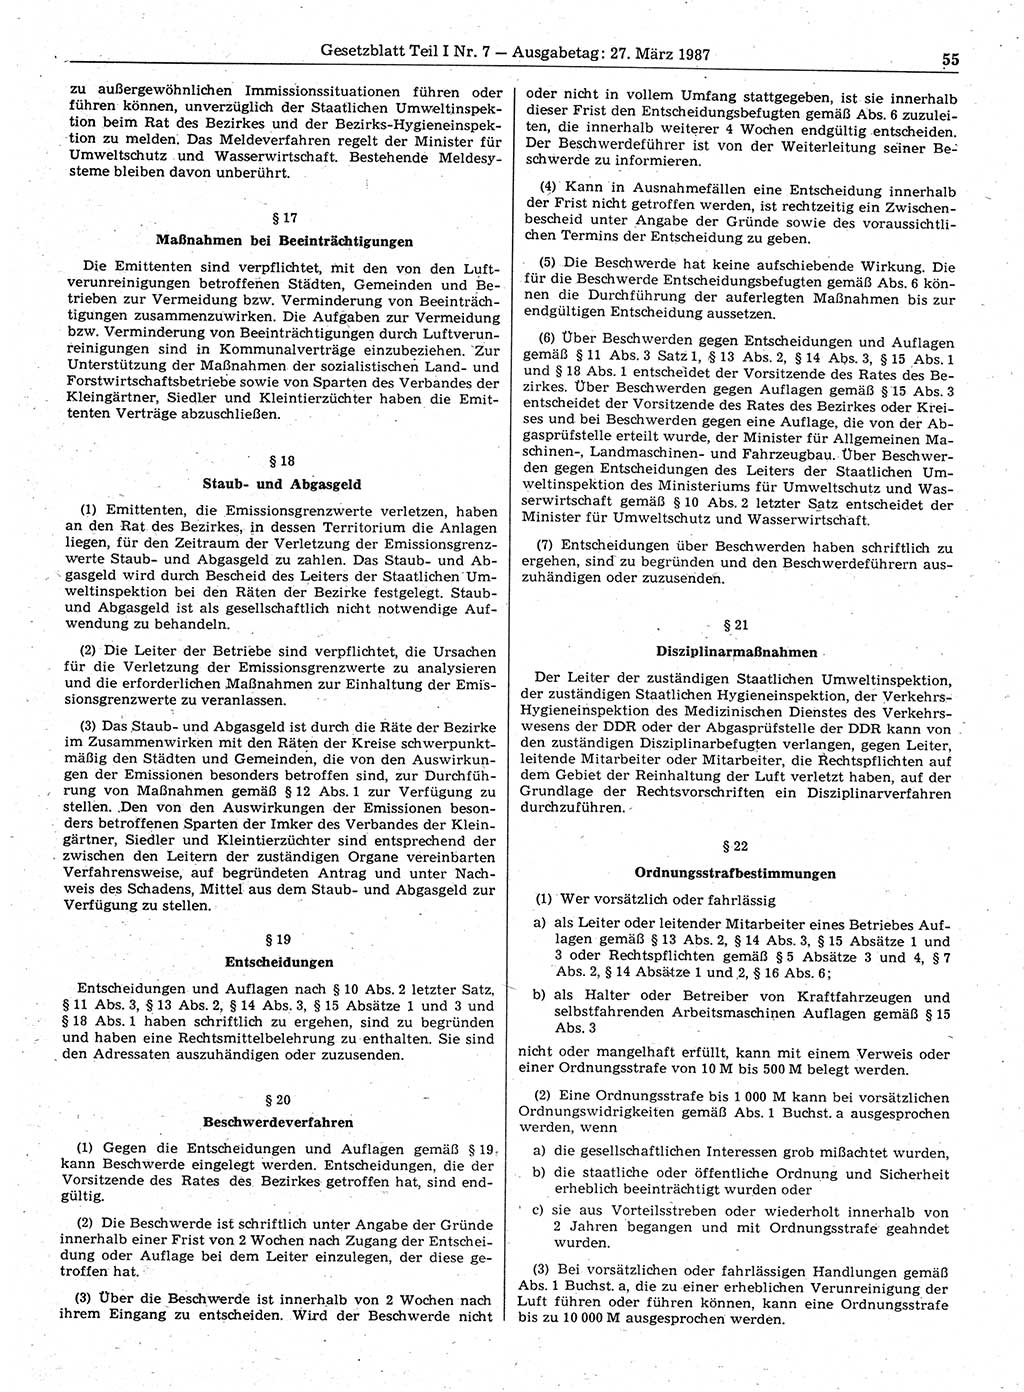 Gesetzblatt (GBl.) der Deutschen Demokratischen Republik (DDR) Teil Ⅰ 1987, Seite 55 (GBl. DDR Ⅰ 1987, S. 55)